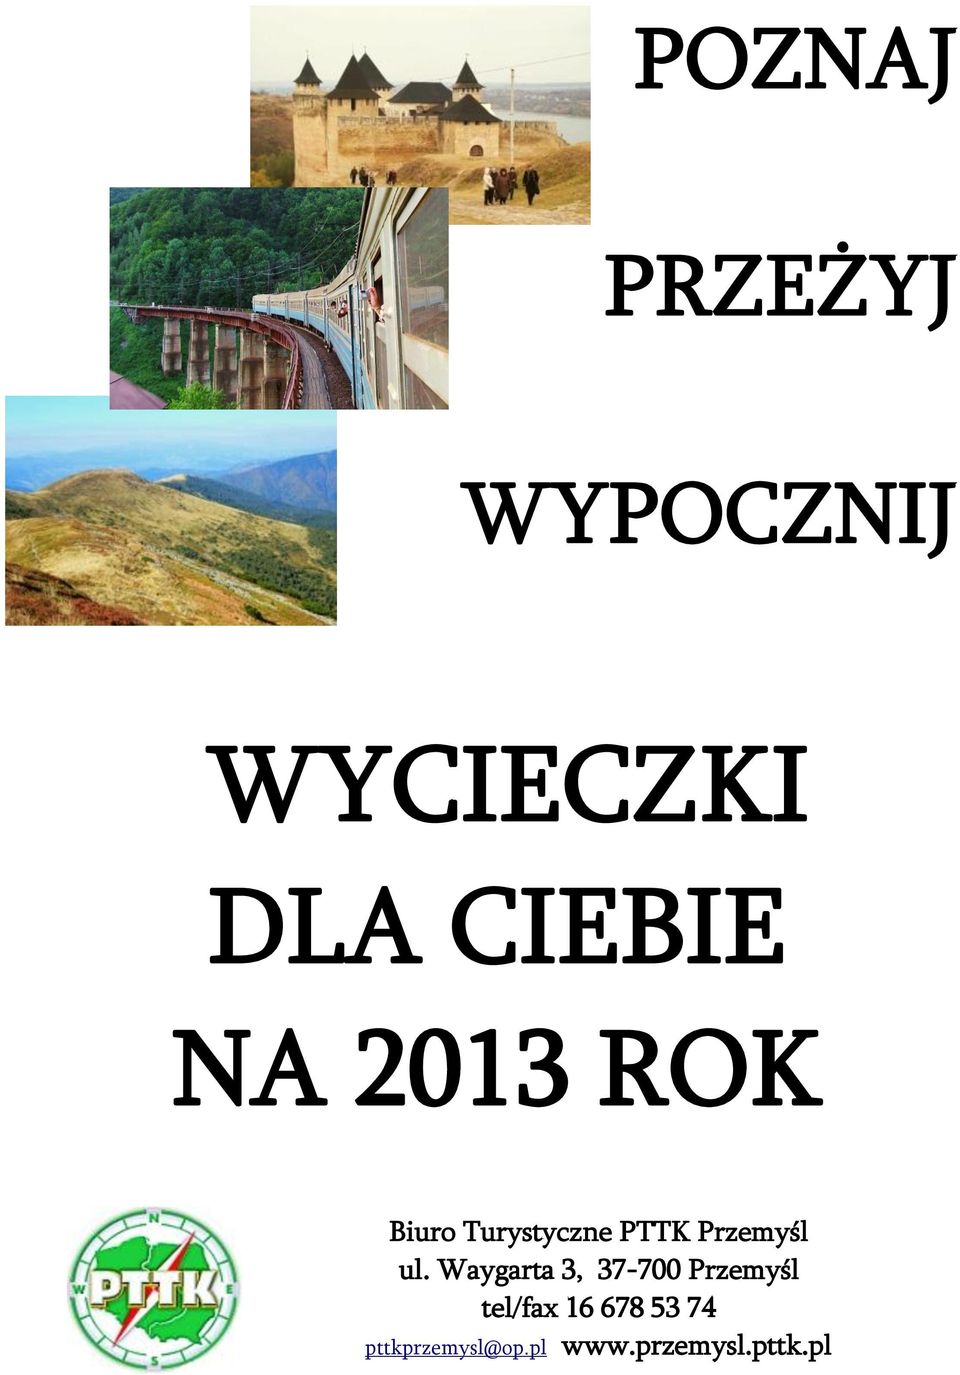 ul. Waygarta 3, 37-700 Przemyśl tel/fax 16